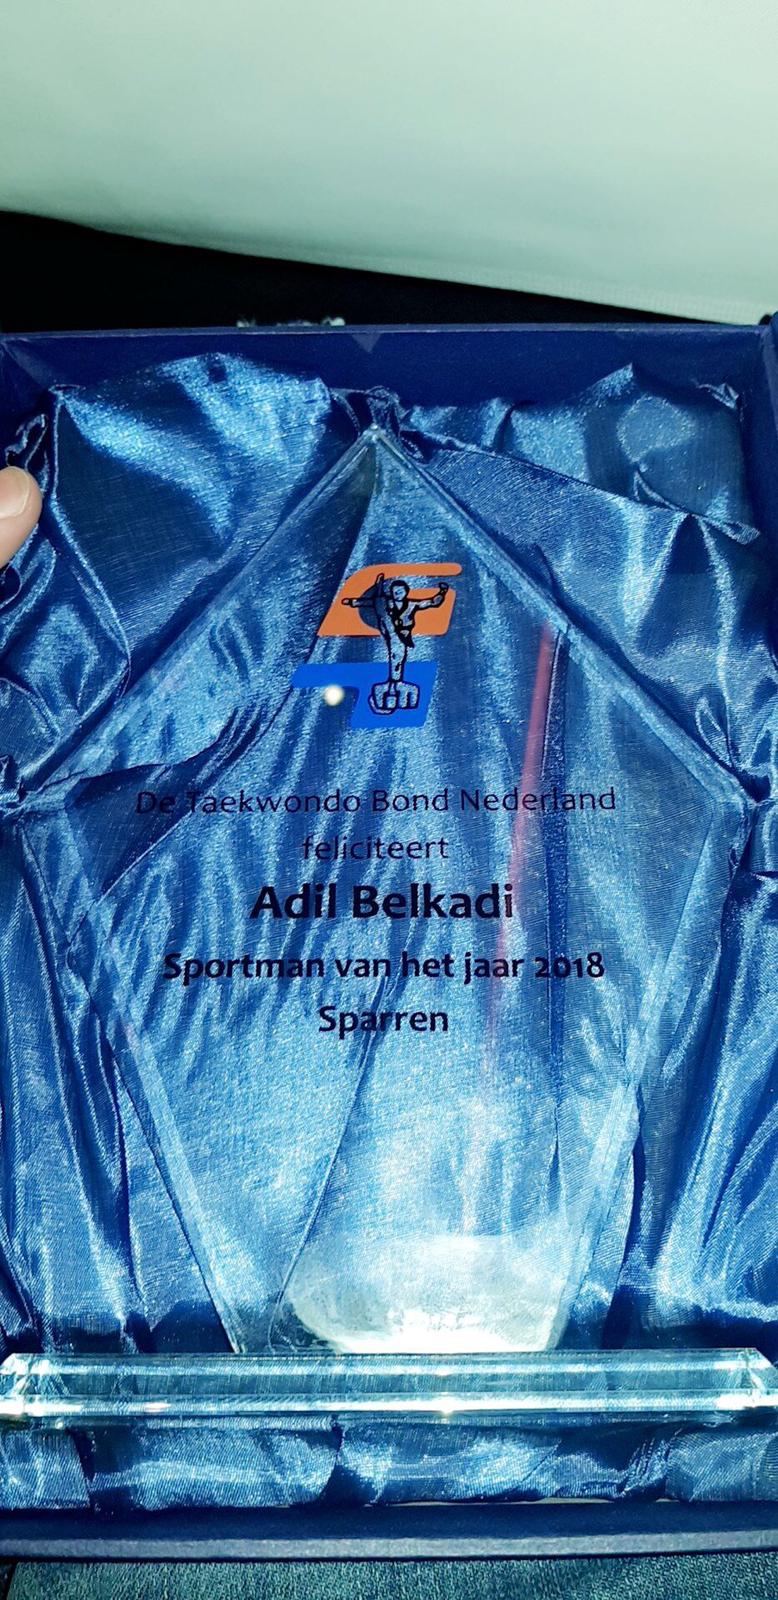 Adil Belkadi Sportman van het jaar 2018